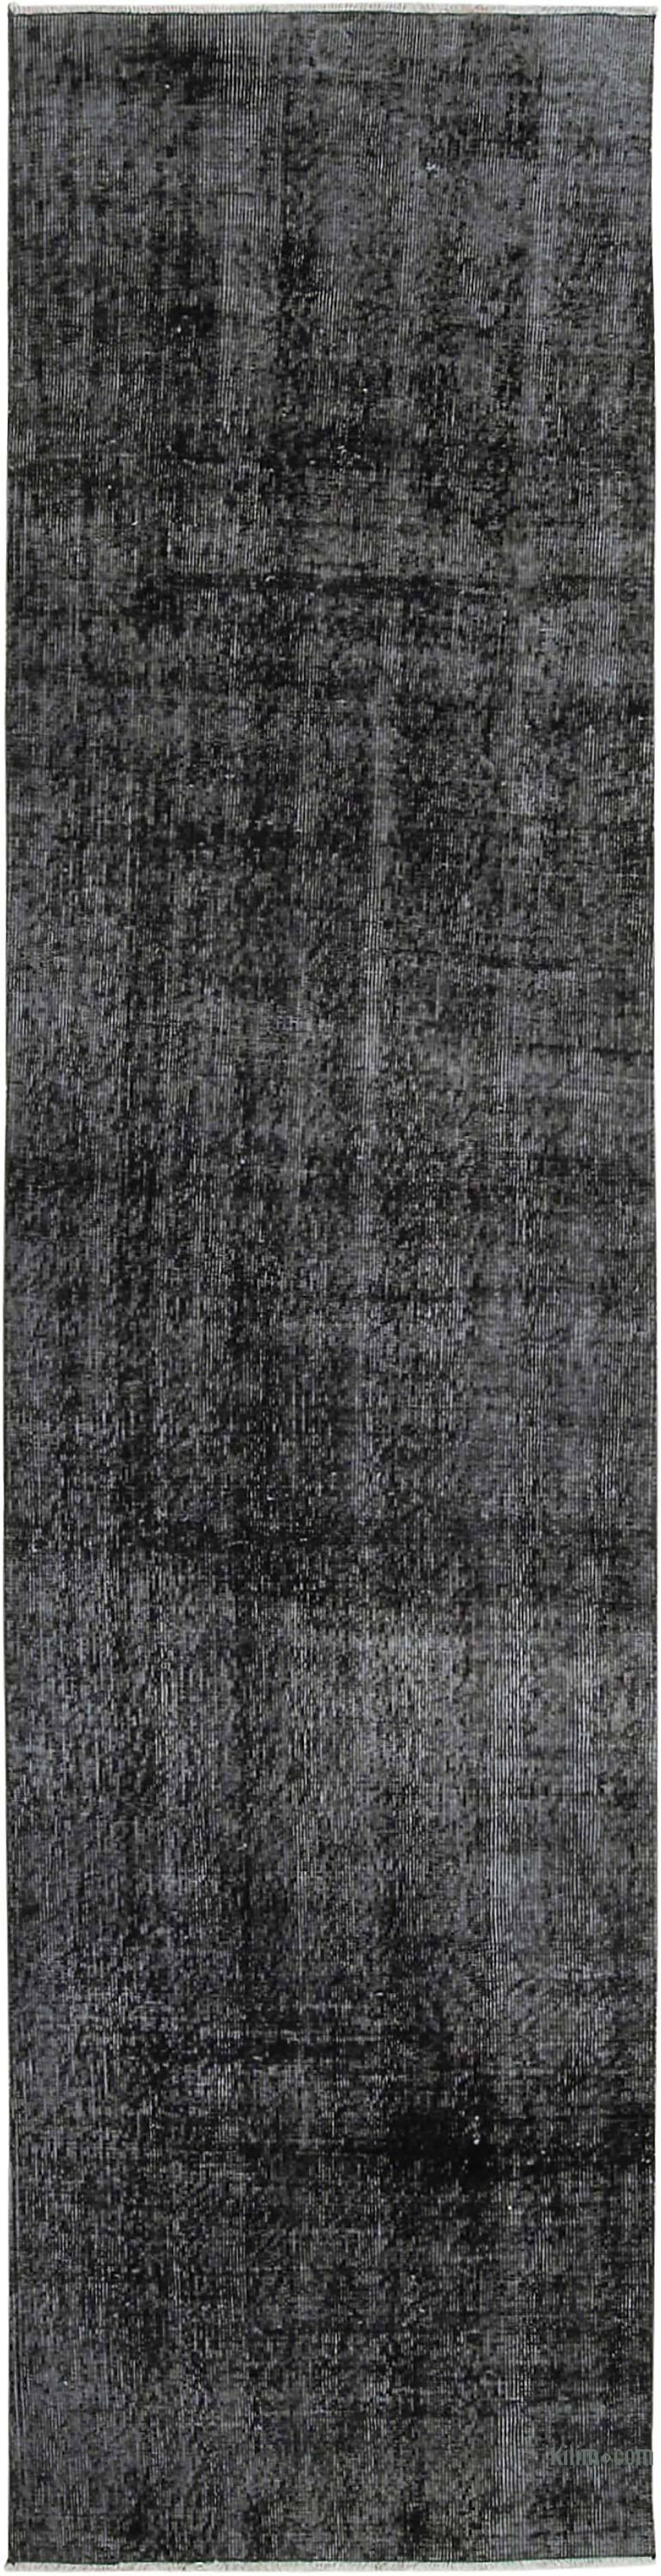 Siyah Boyalı El Dokuma Vintage Halı Yolluk - 81 cm x 310 cm - K0054568